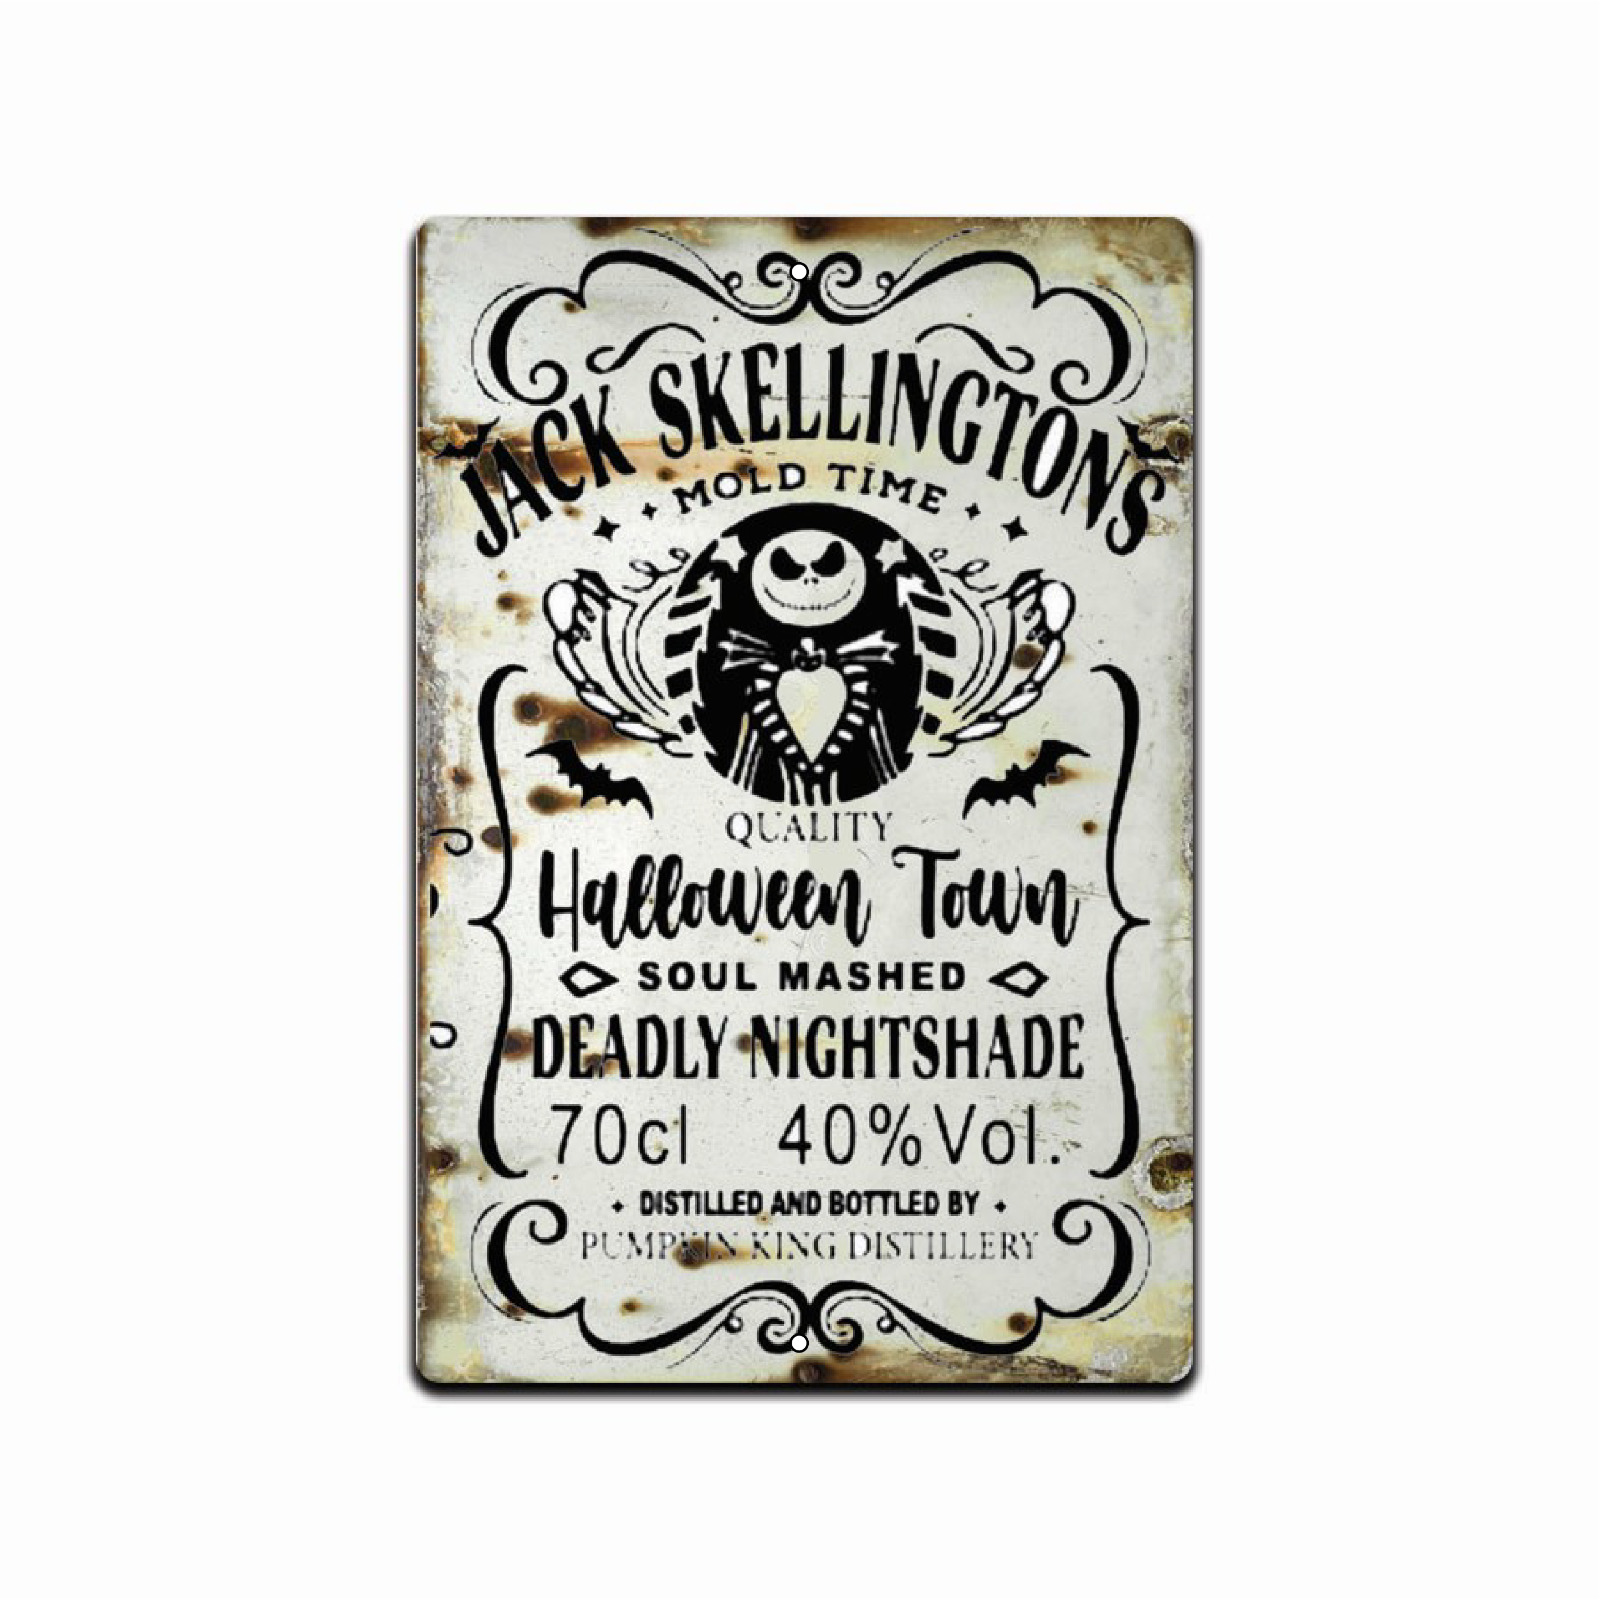 JACK SKELLINGTON MOLD TIME  HALLOWEEN  MOONSHINE BAR TIN METAL SIGN WALL DECOR